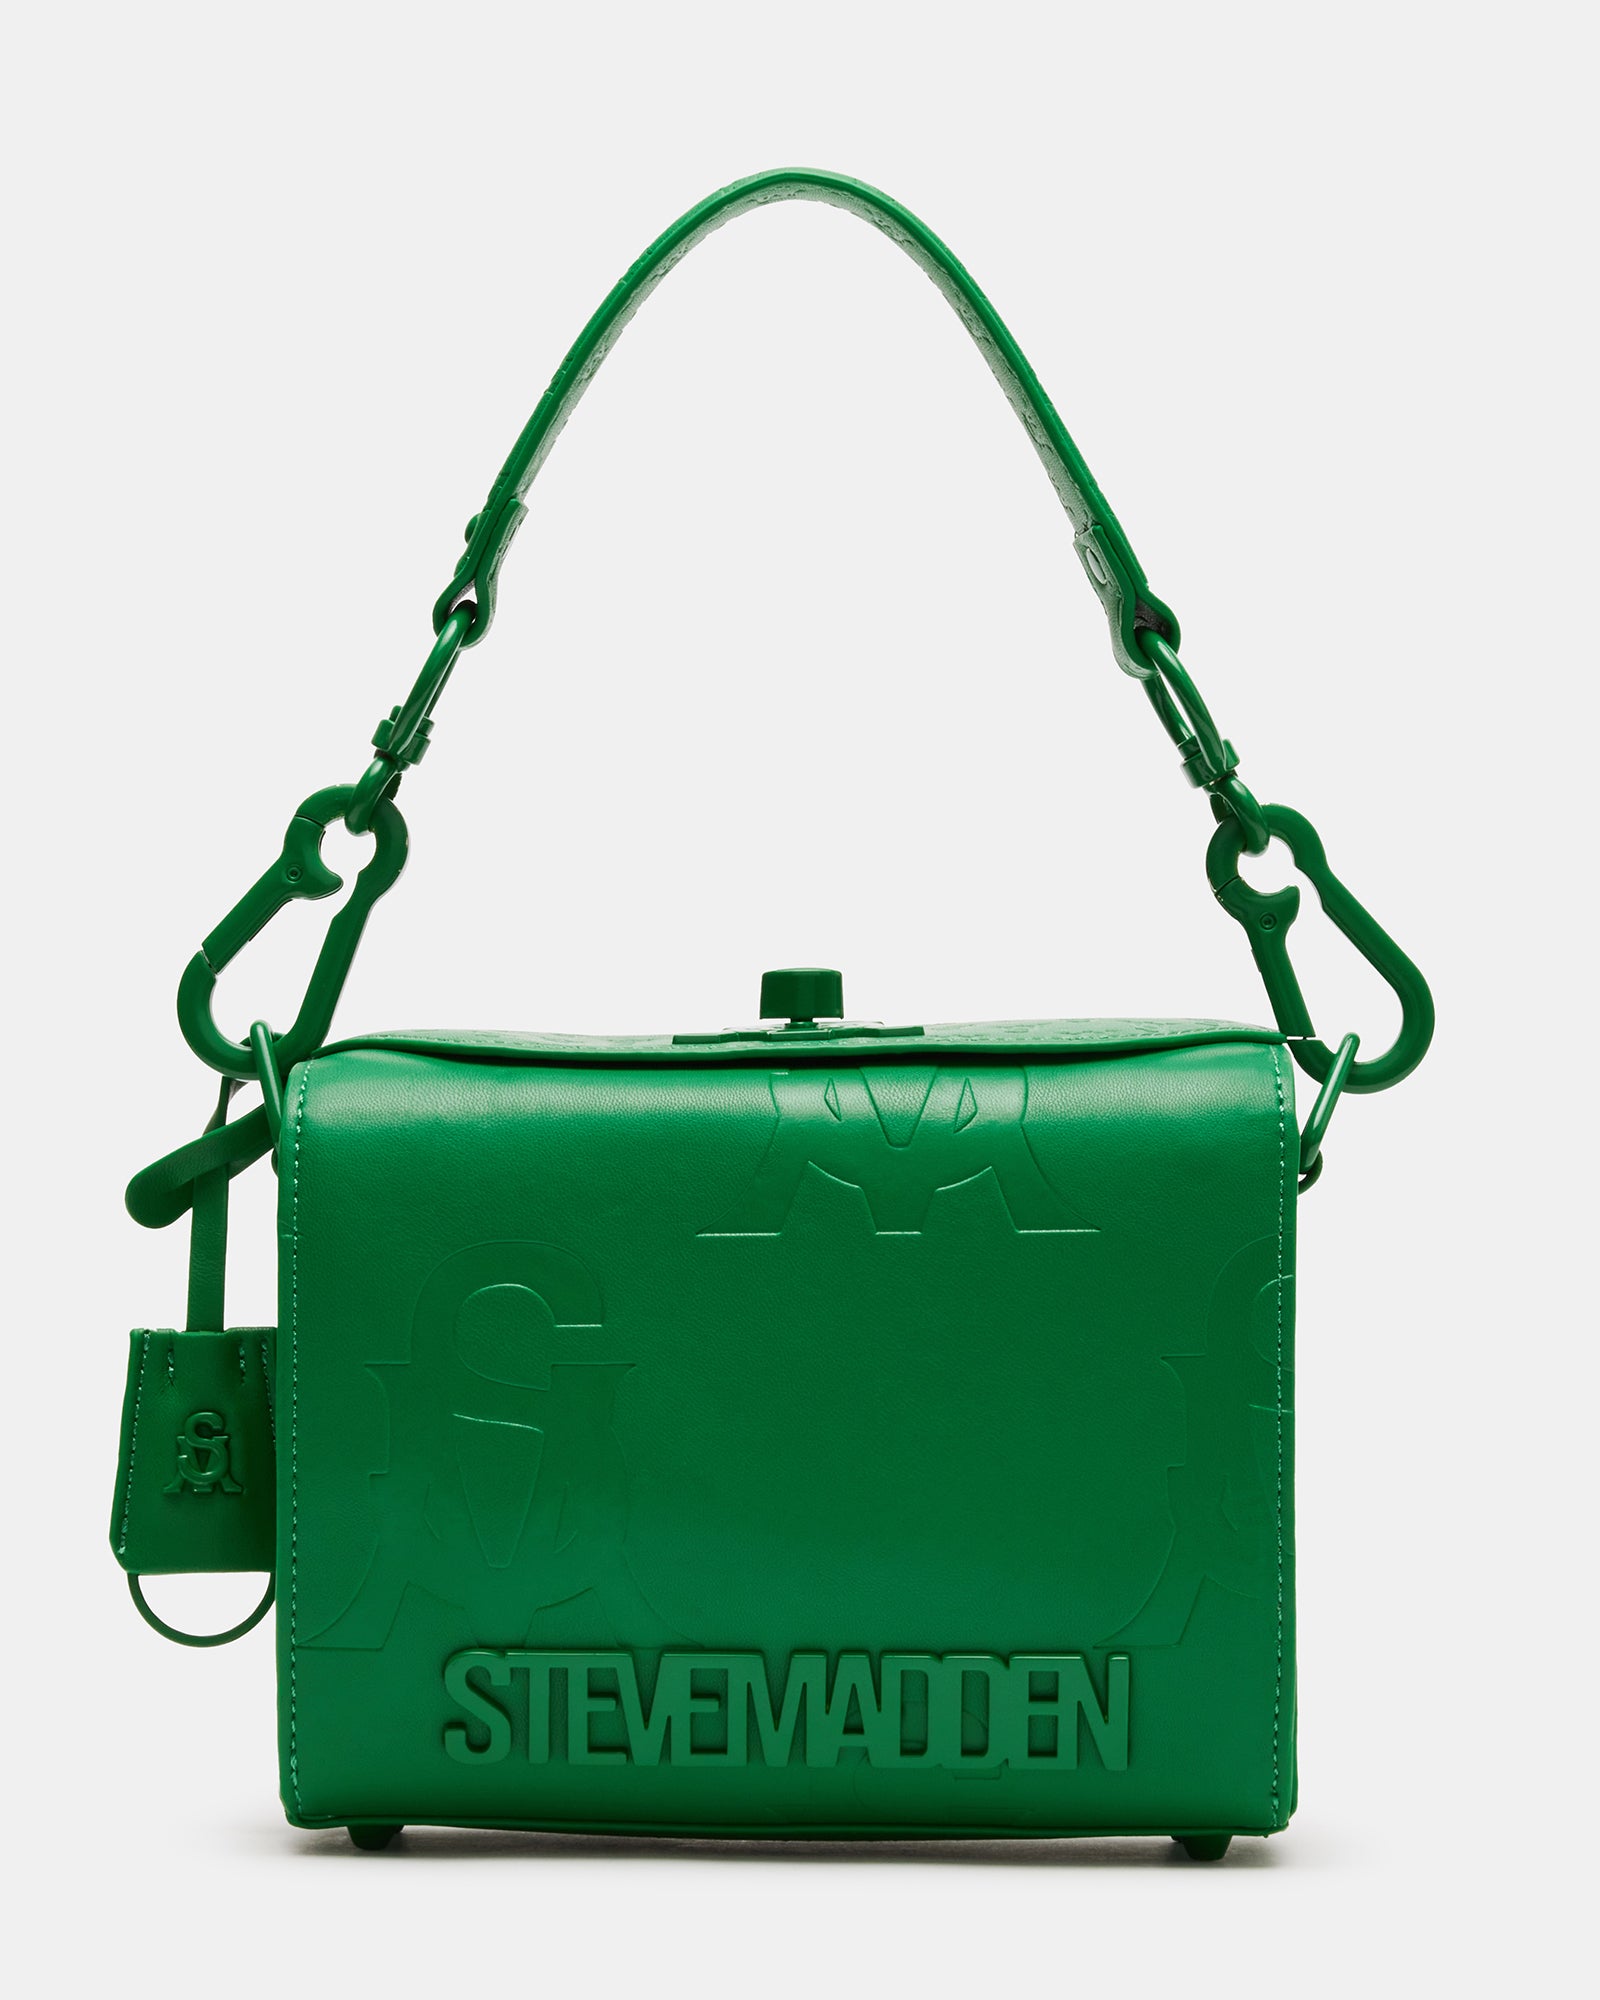 Steve Madden Handbags 